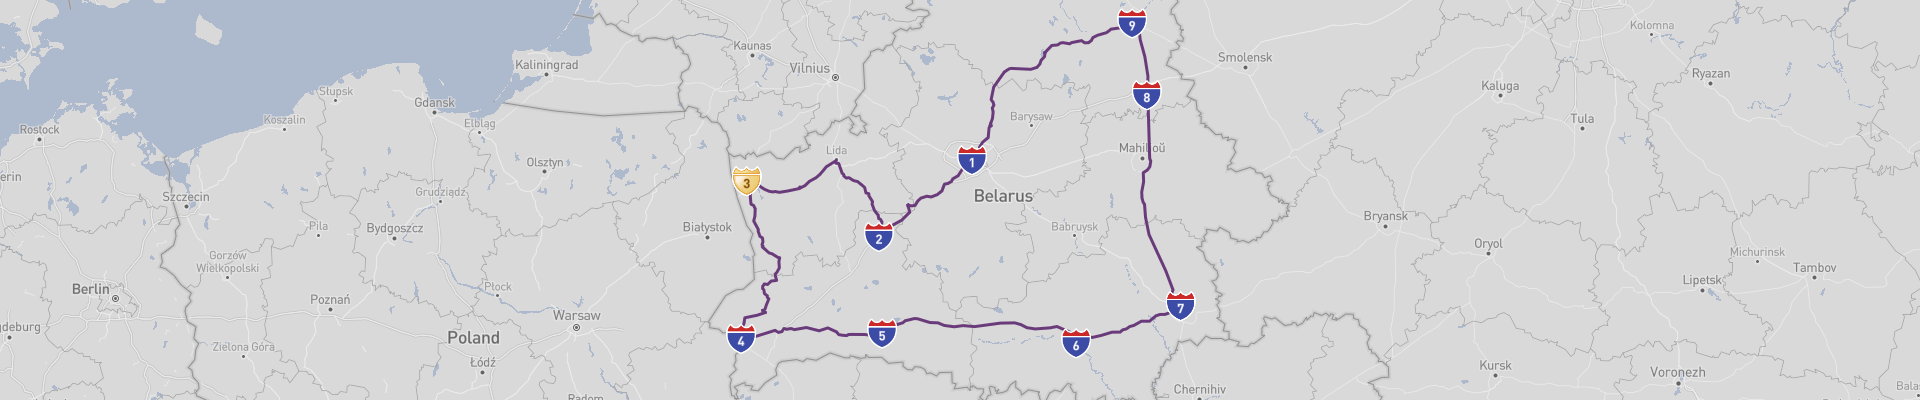 Itinéraire Belarus 